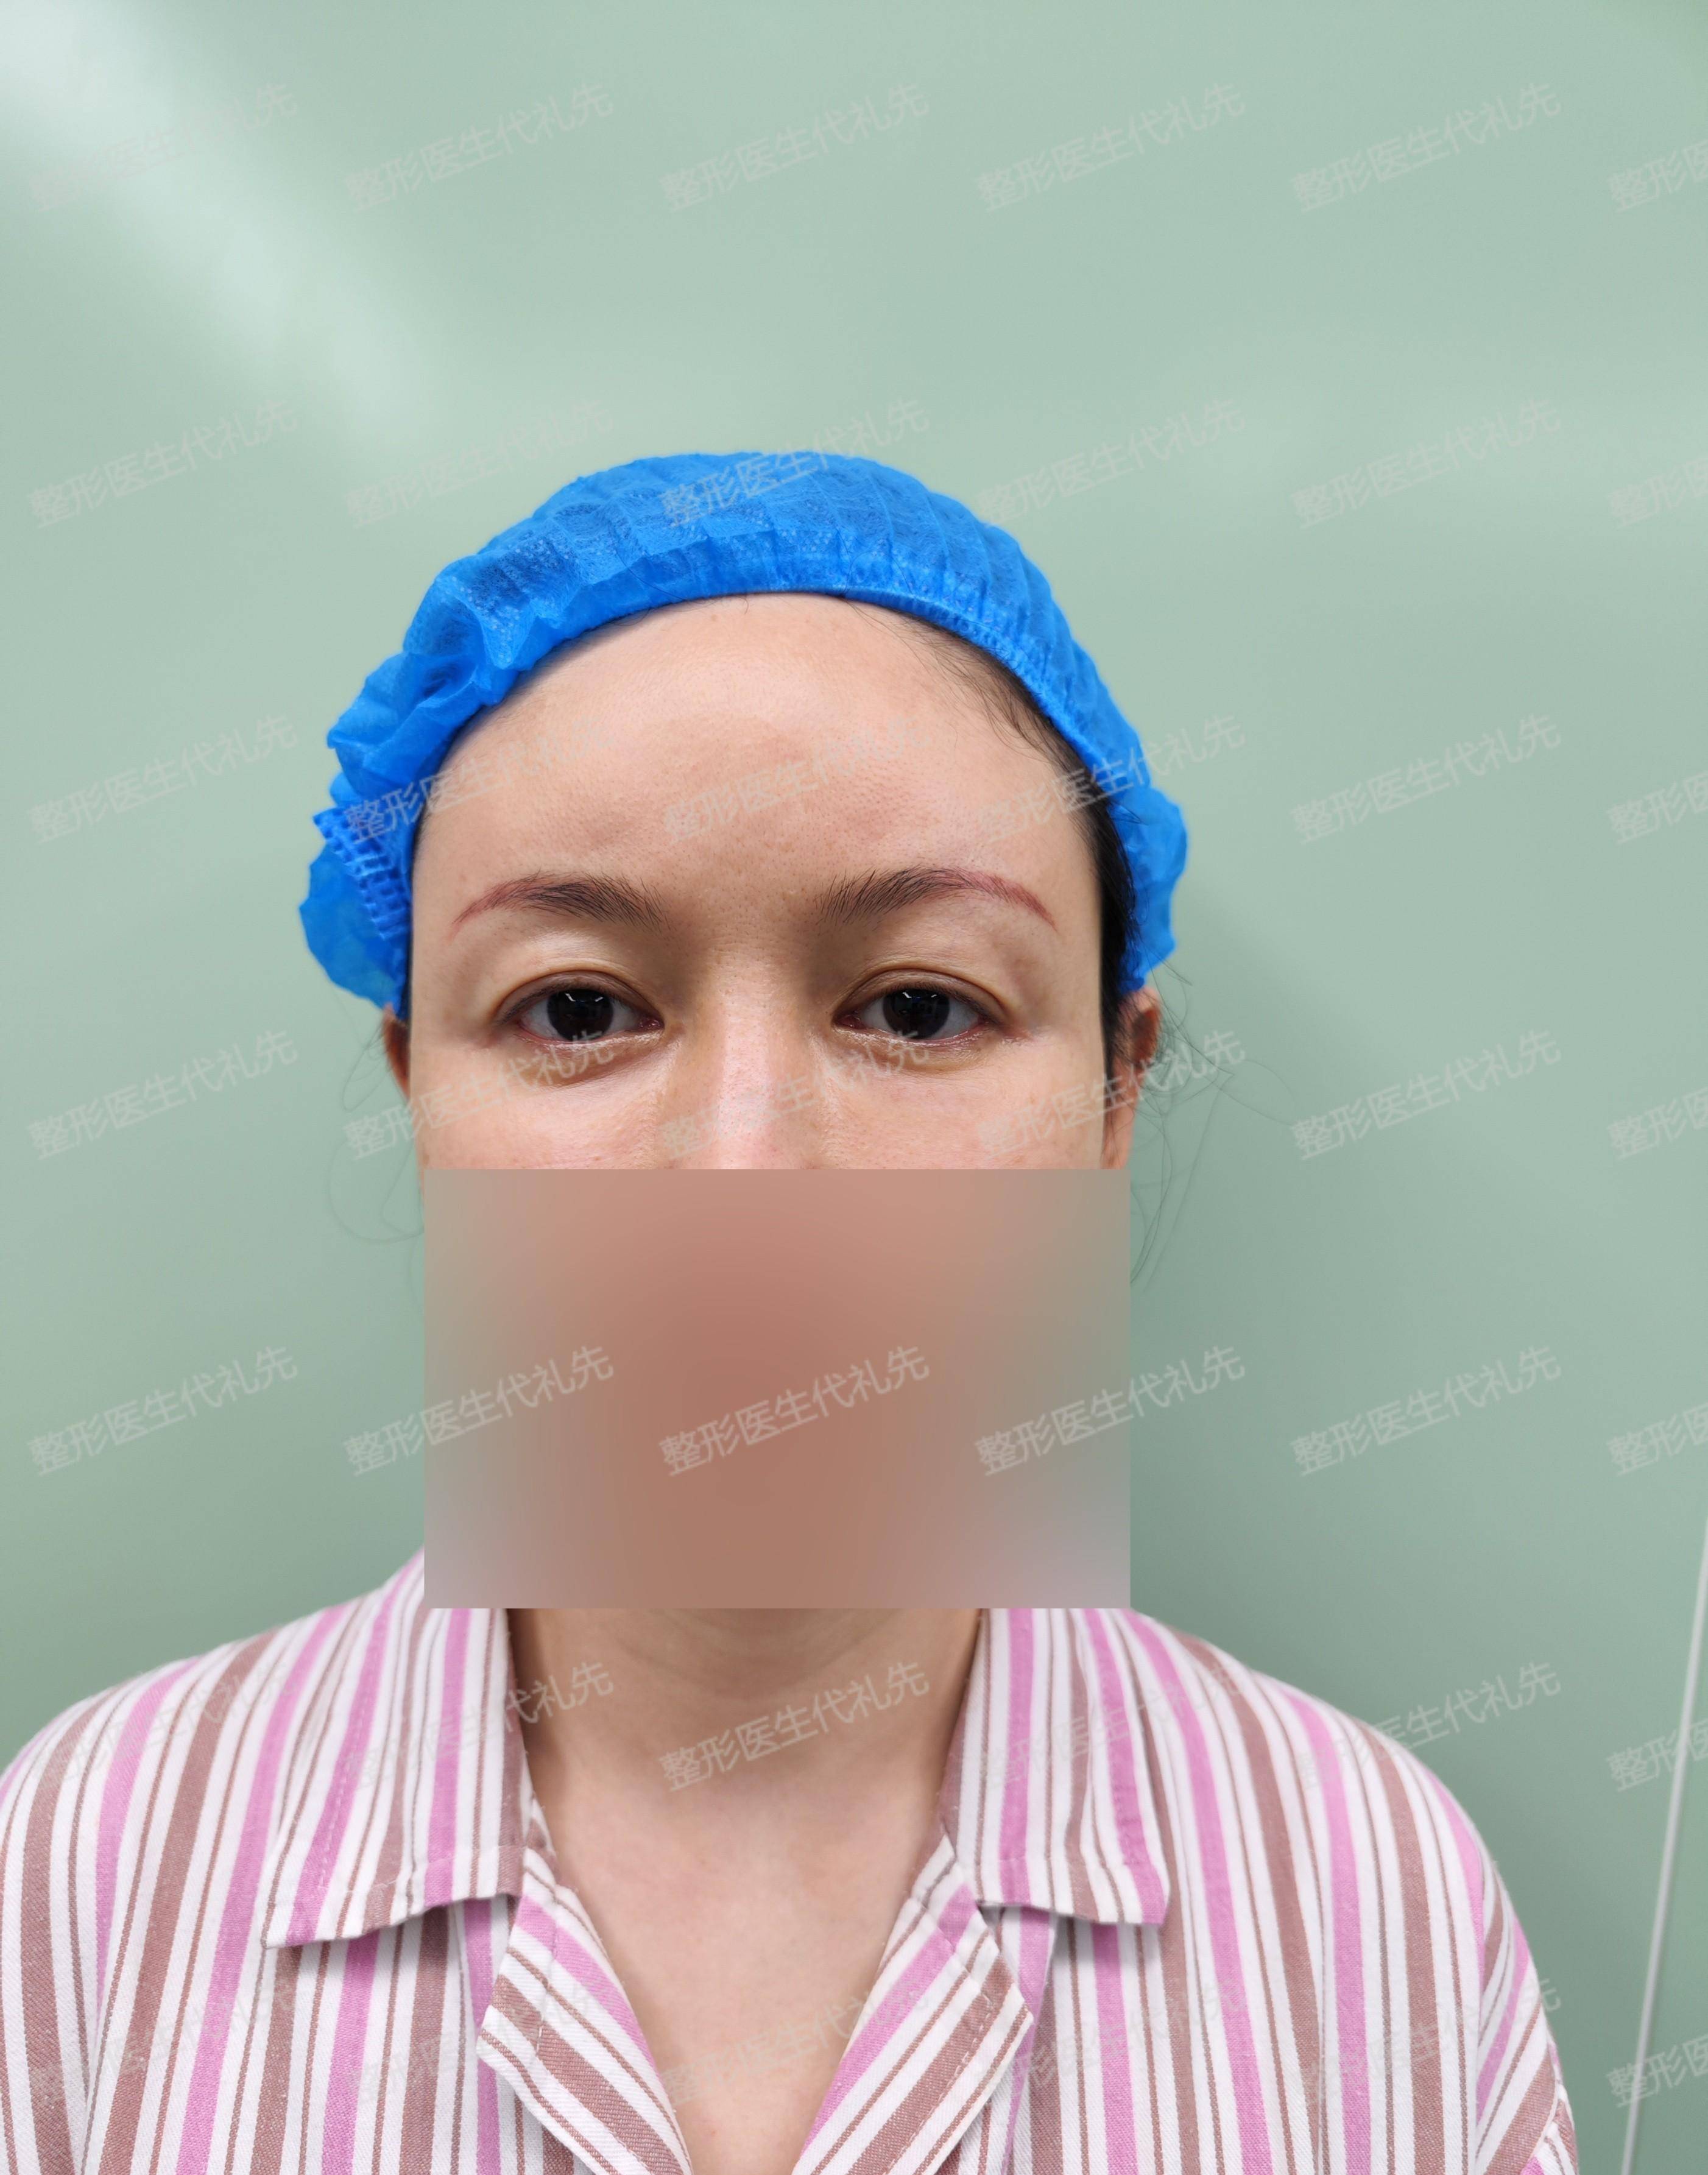 43岁女士来北京做了筋膜悬吊提眉手术,术后2周高清照片对比